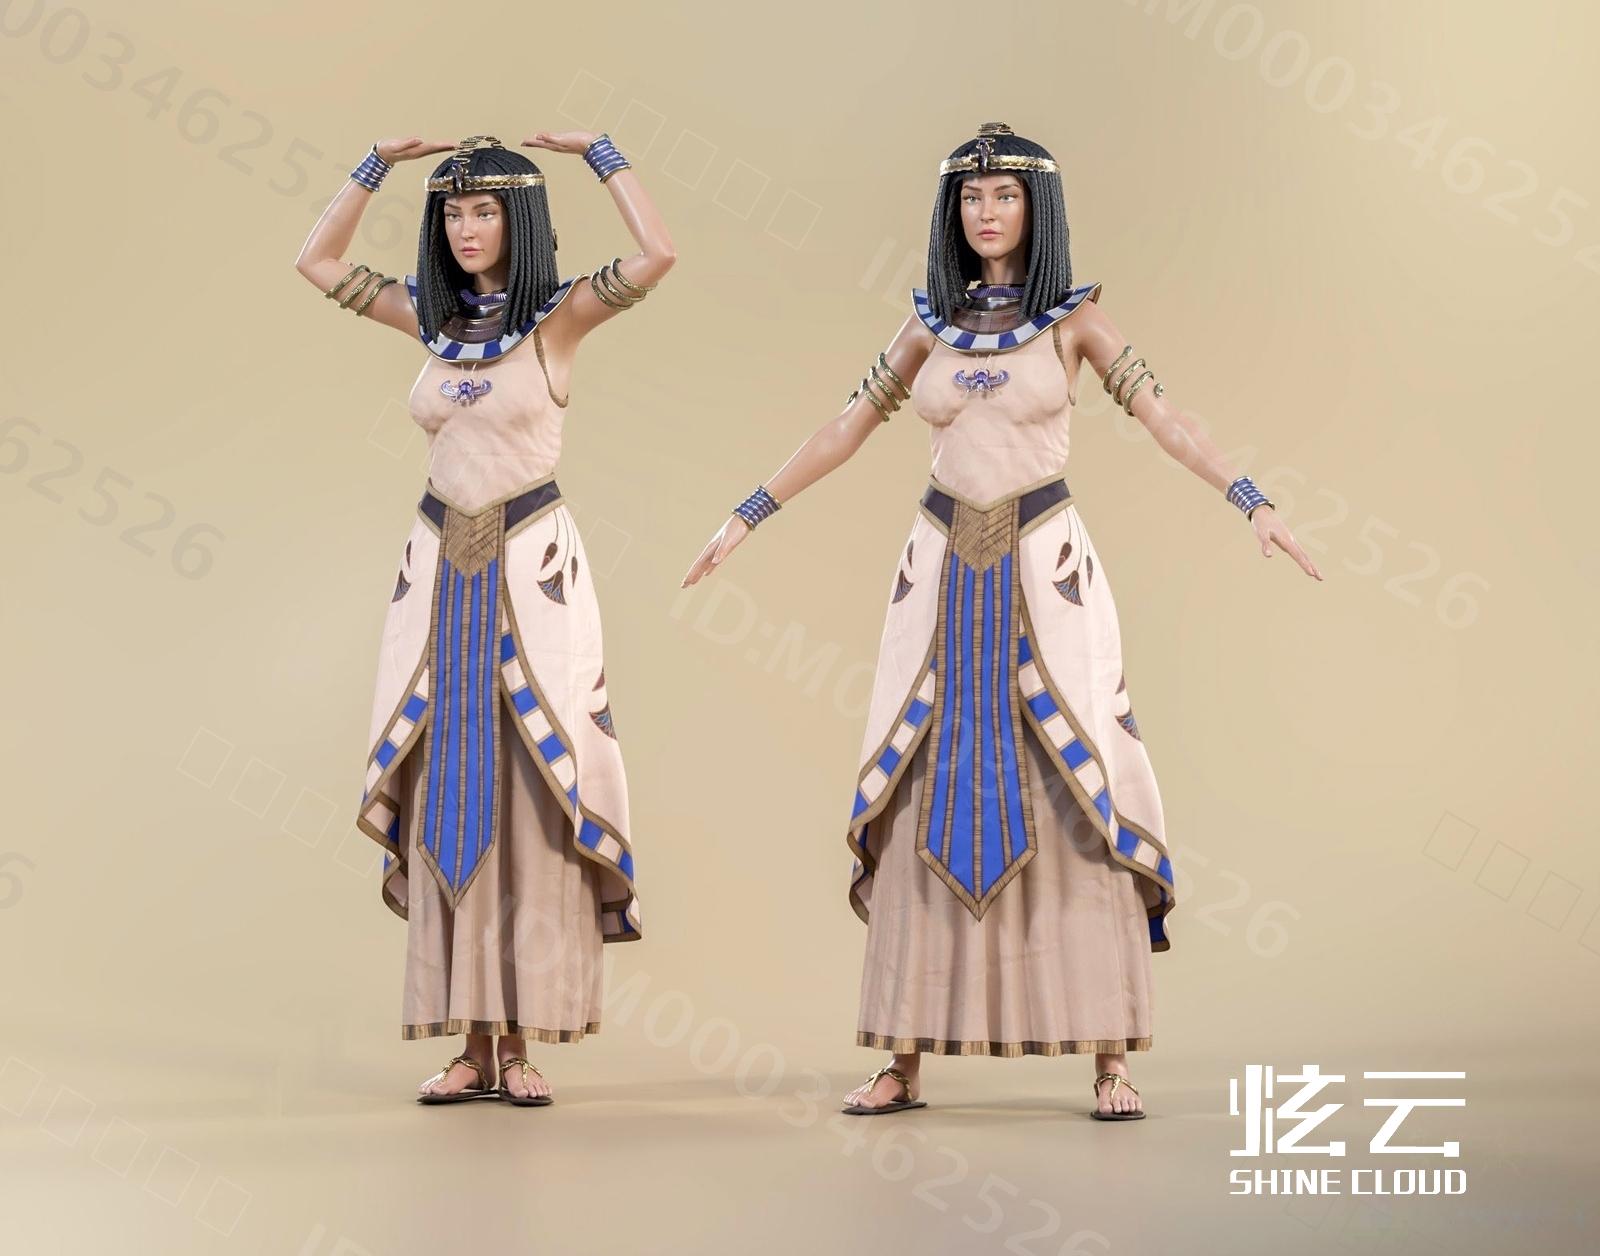 埃及妇女 库存照片. 图片 包括有 魅力, 文明, 克利奥帕特拉, 舞蹈, 服装, 眼睛, 头发, 历史 - 12601636